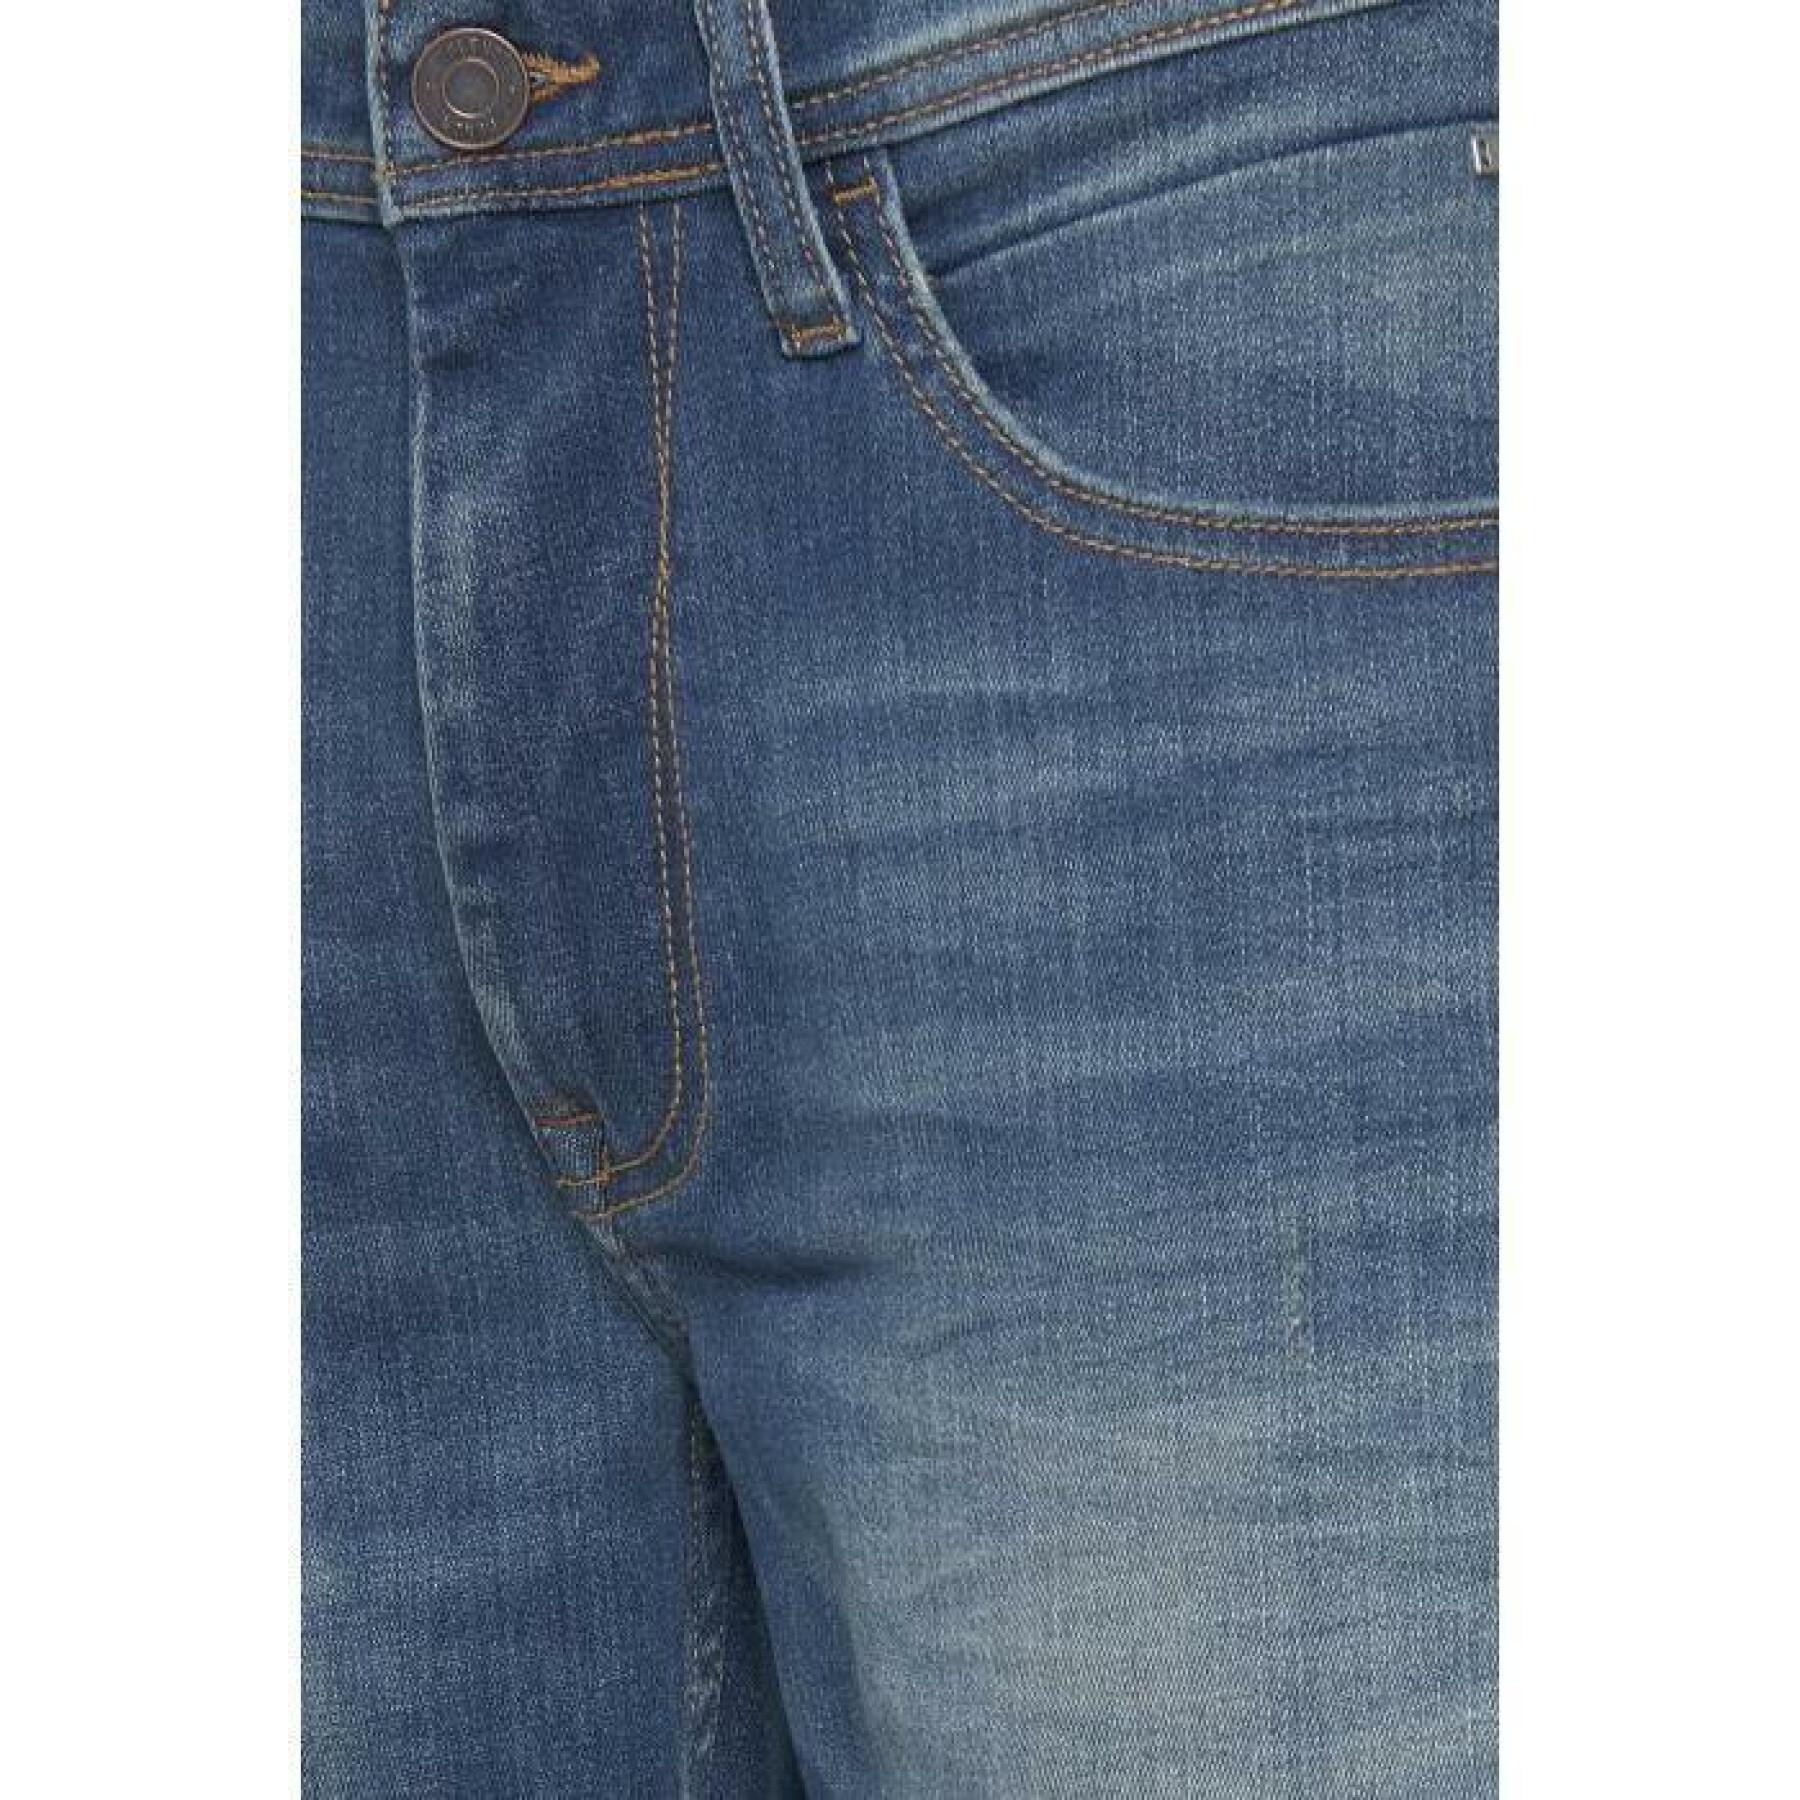 Eng geschnittene Jeans Damen Blend Twister - Multiflex